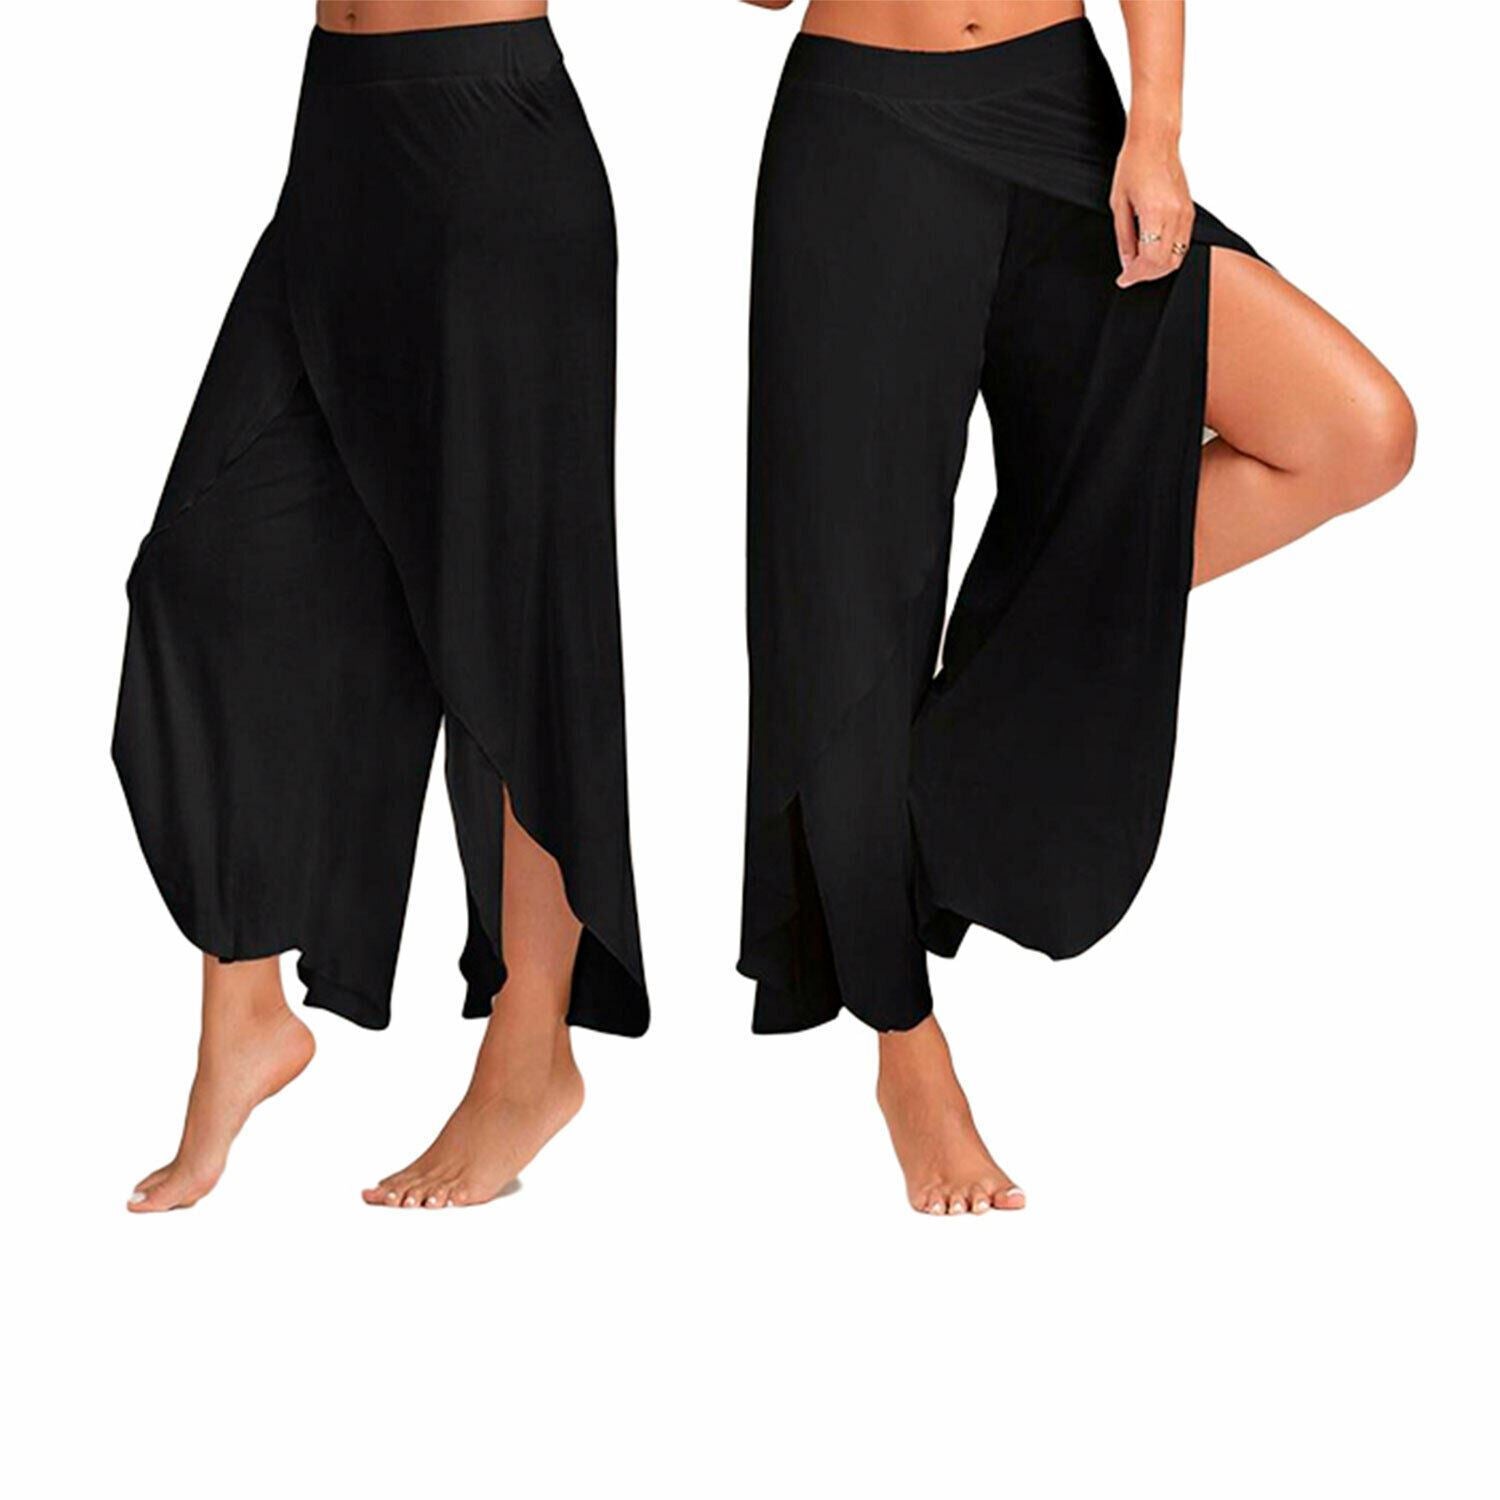 Super Soft Cotton Spandex Harem Style Yoga Pilates Pants, Black - XXL –  Avant Garde Brands